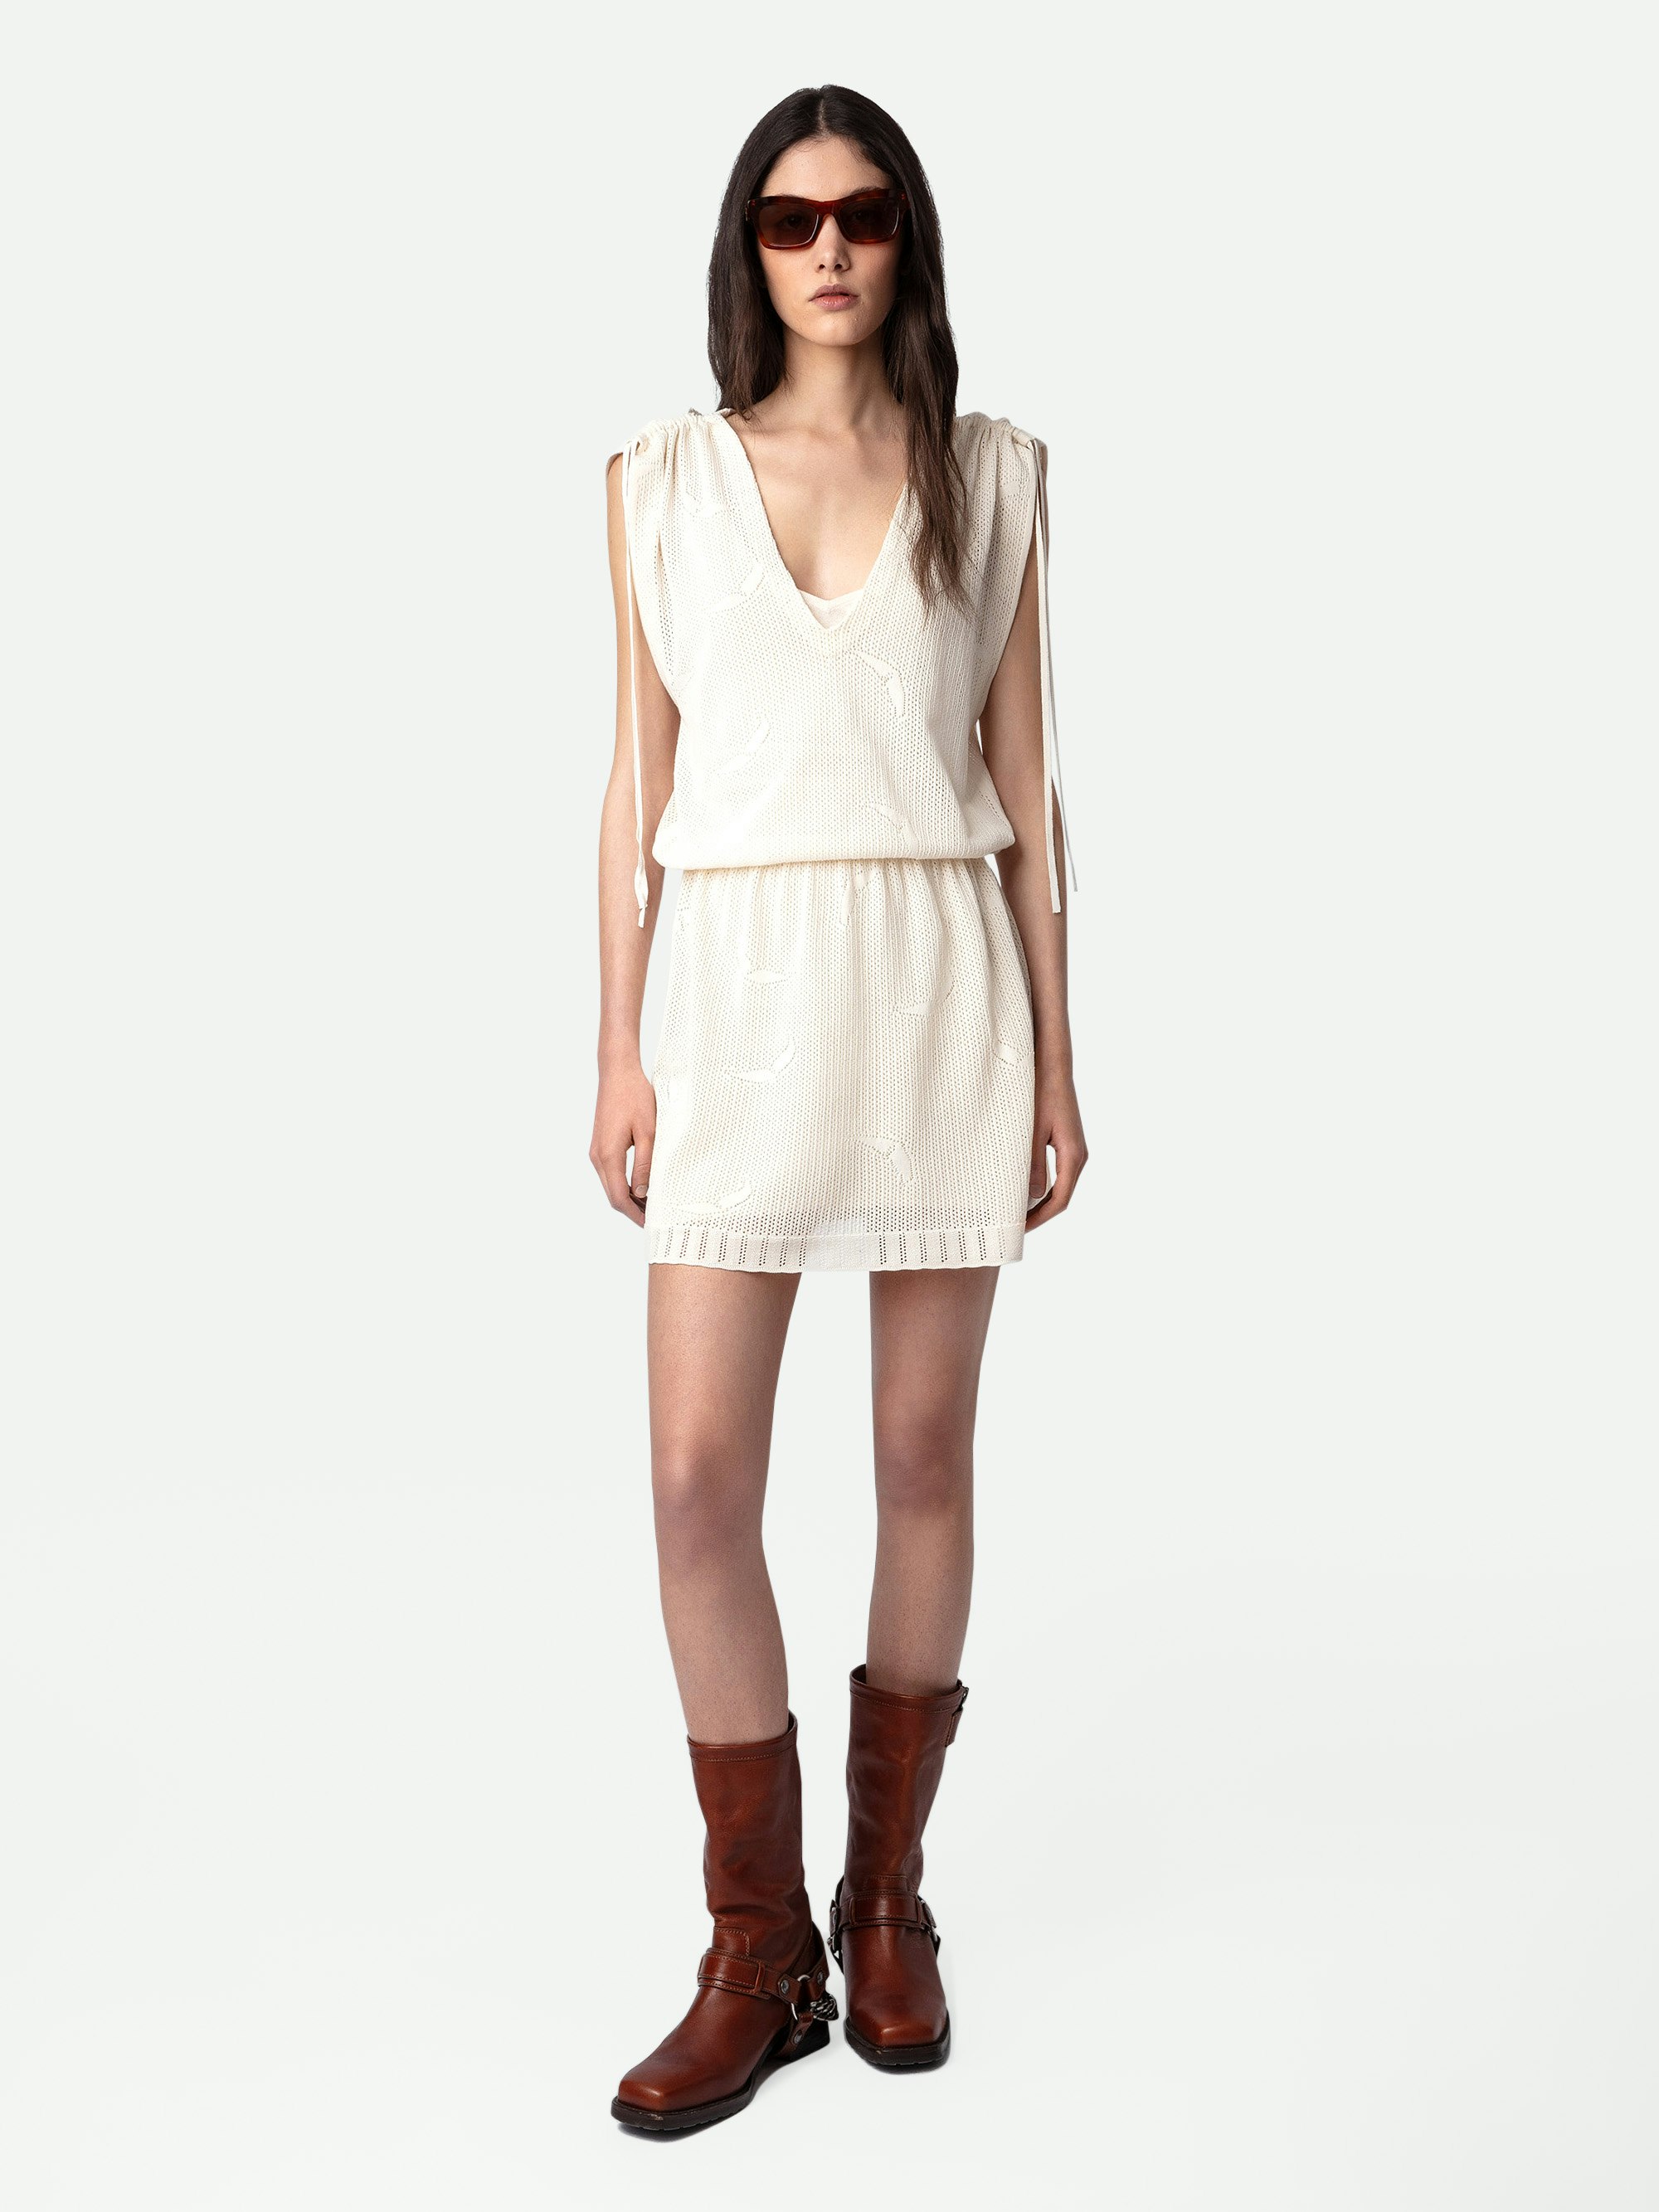 Kleid Alanis - Kurzes Kleid aus ecrufarbener Baumwollspitze mit elastischer Taille und kurzen Ärmeln mit Bändern.